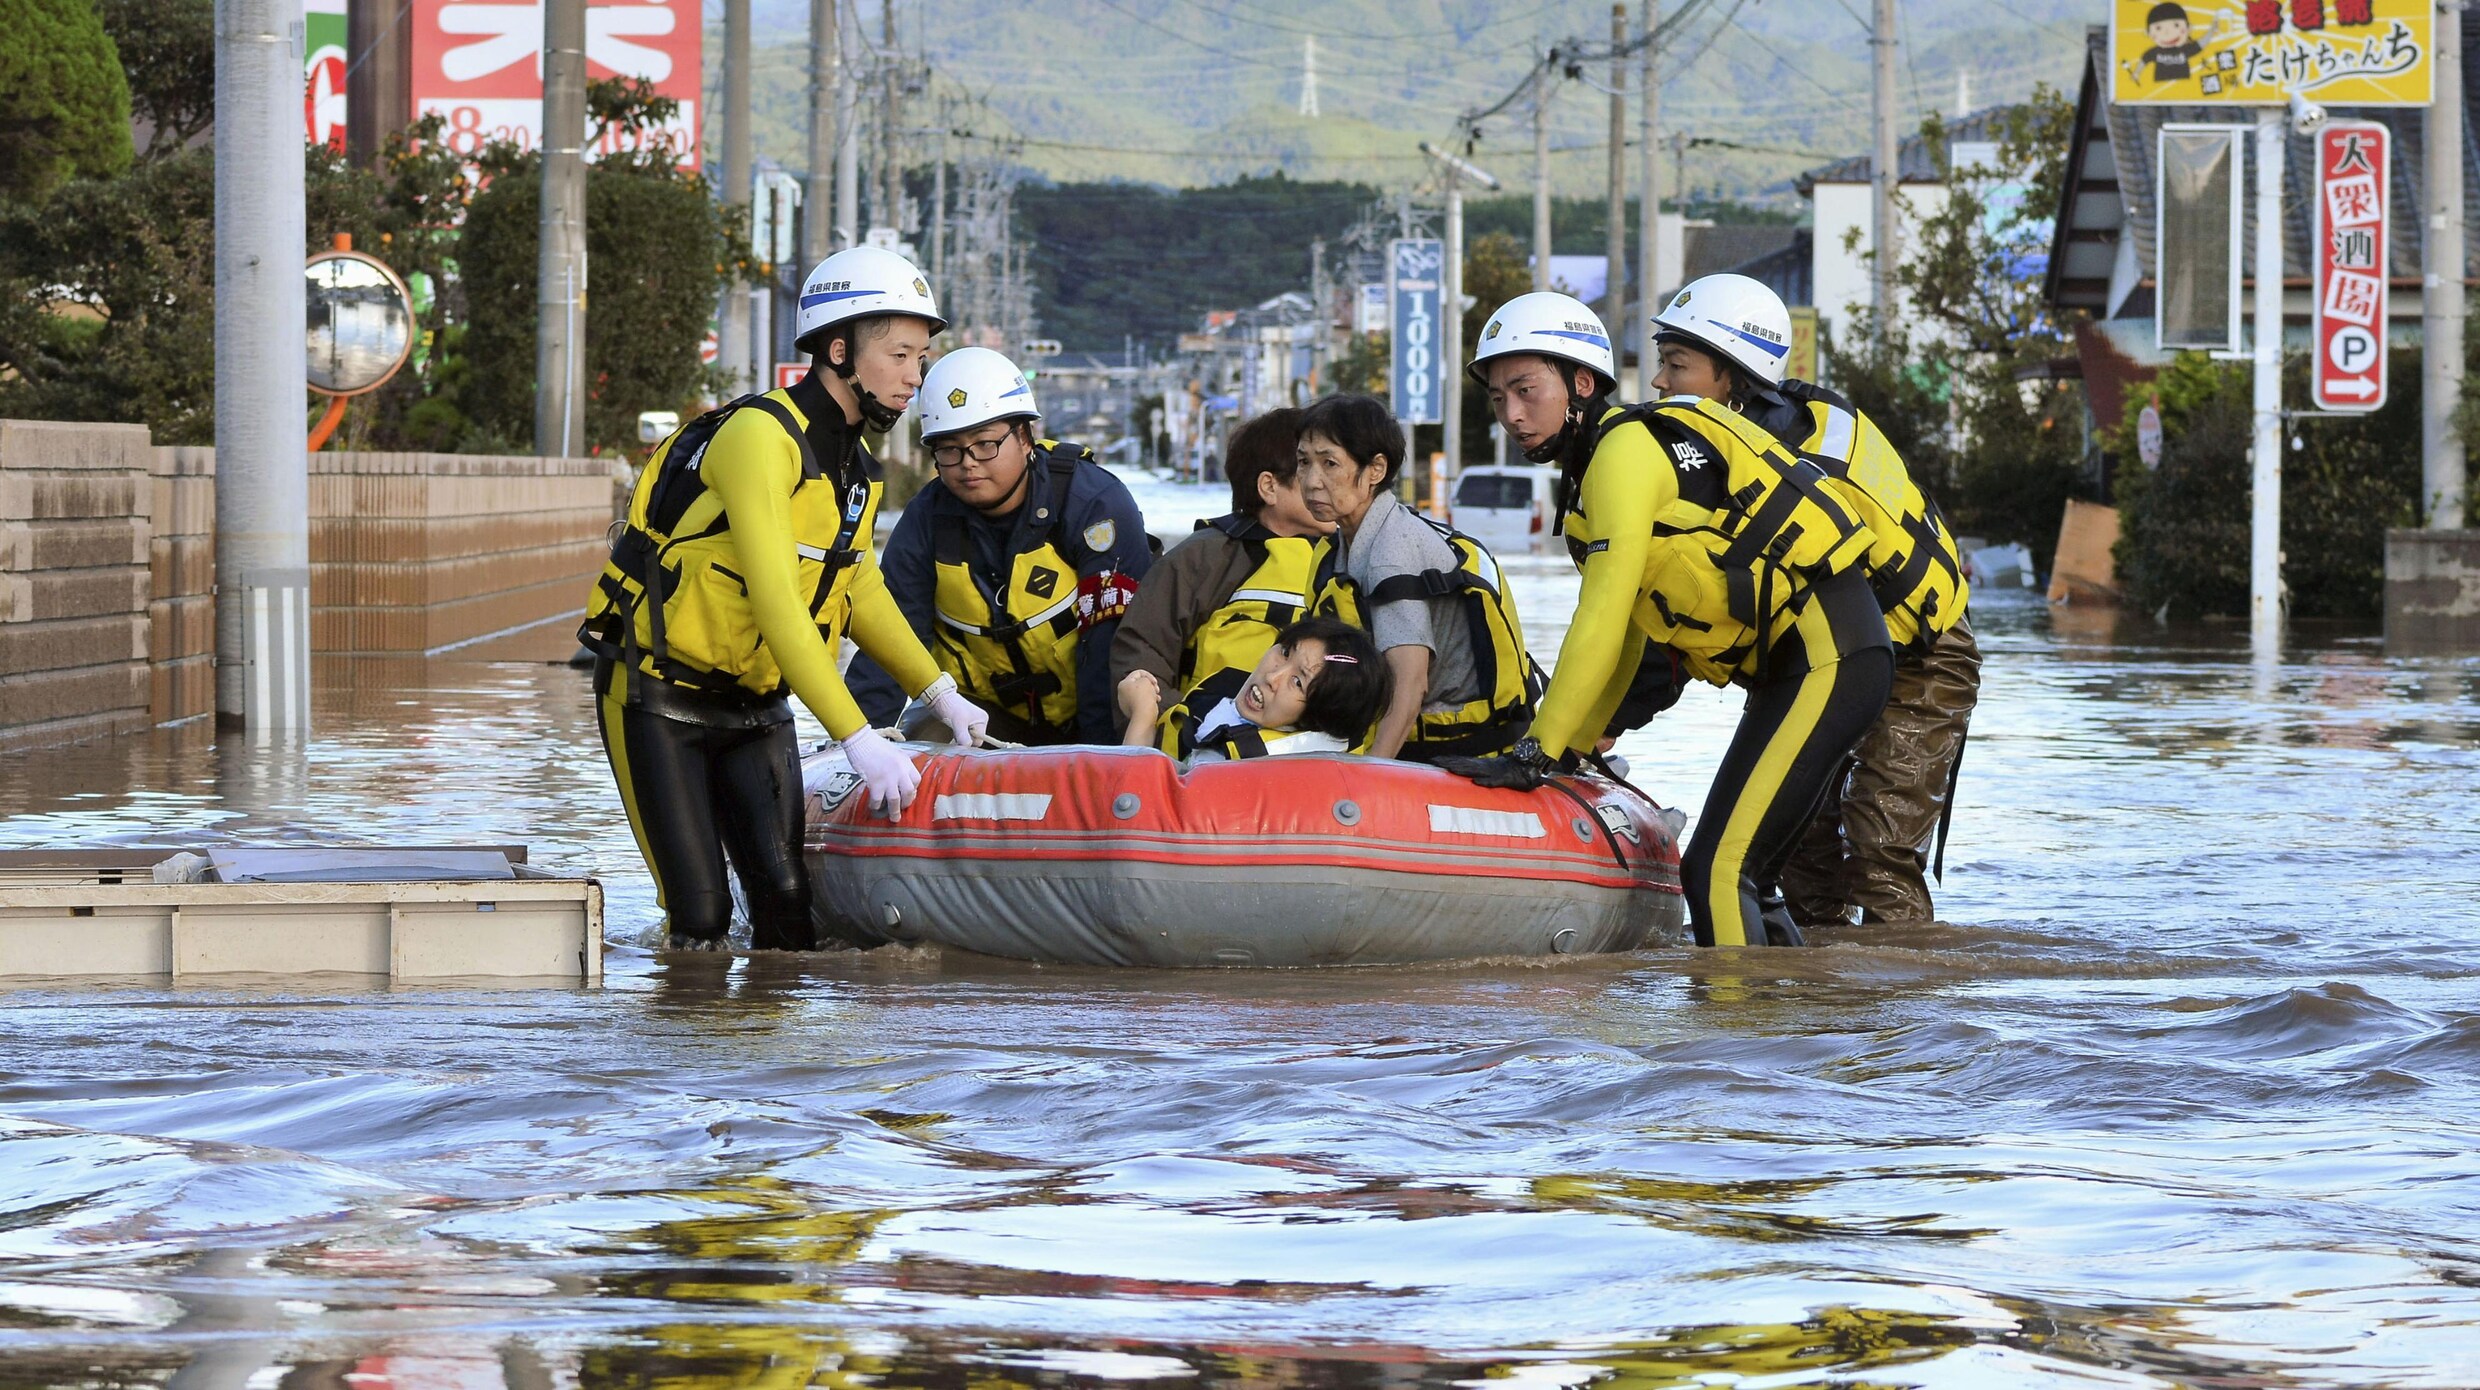 Tyfoon Hagibis raast over Japan: 19 doden en 120 gewonden